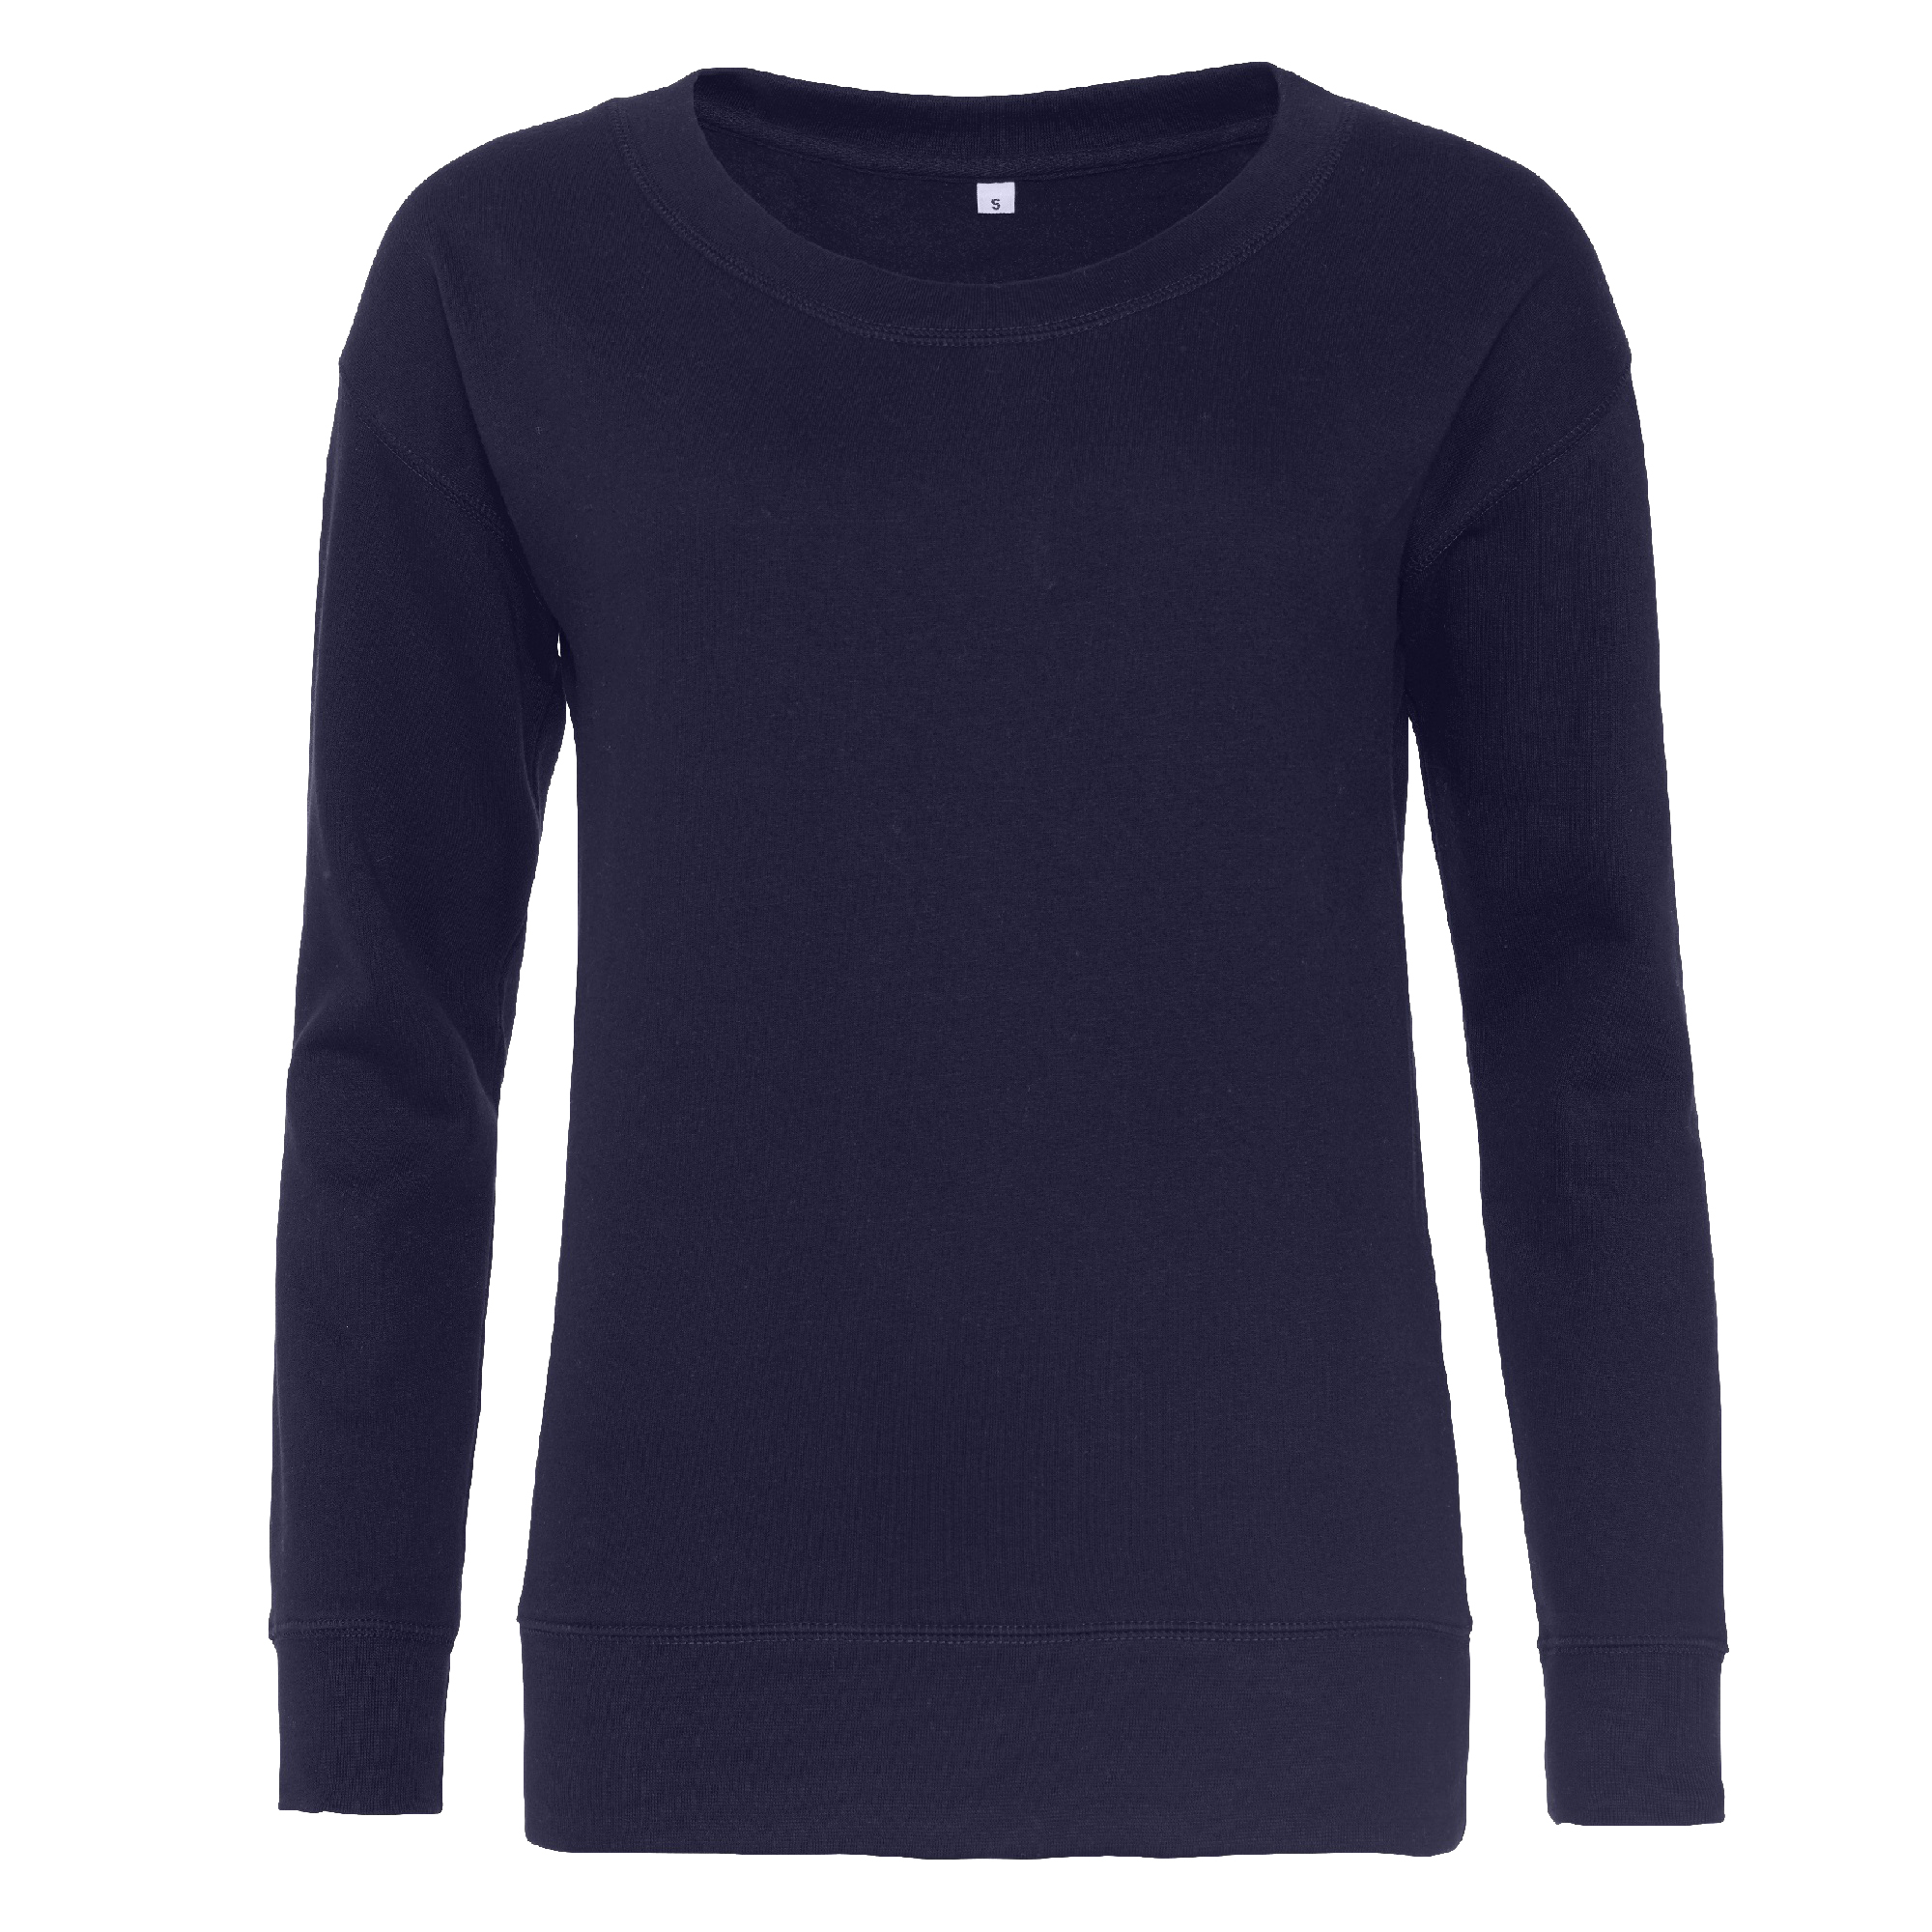 Sweatshirt Moderna Awdis - azul-marino - 